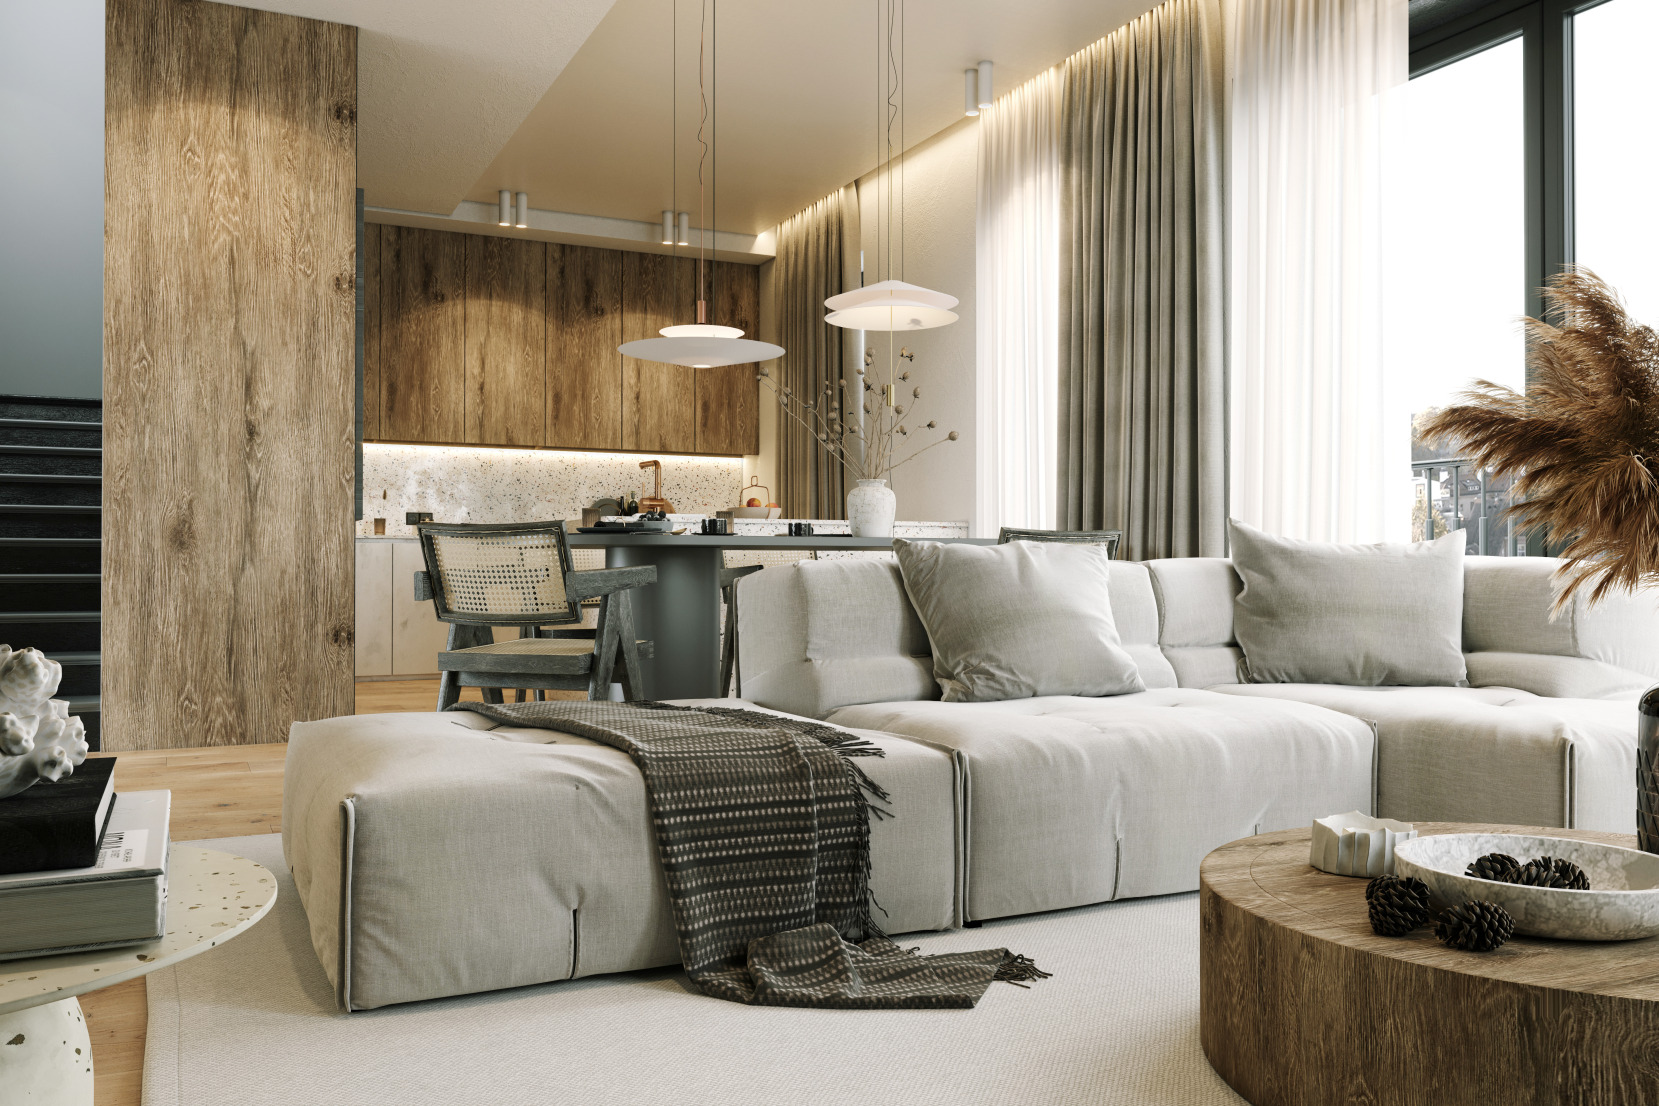 Un salon moderne avec des accents de bois et des couleurs neutres peut illuminer un espace lorsque vous construisez votre propre maison.